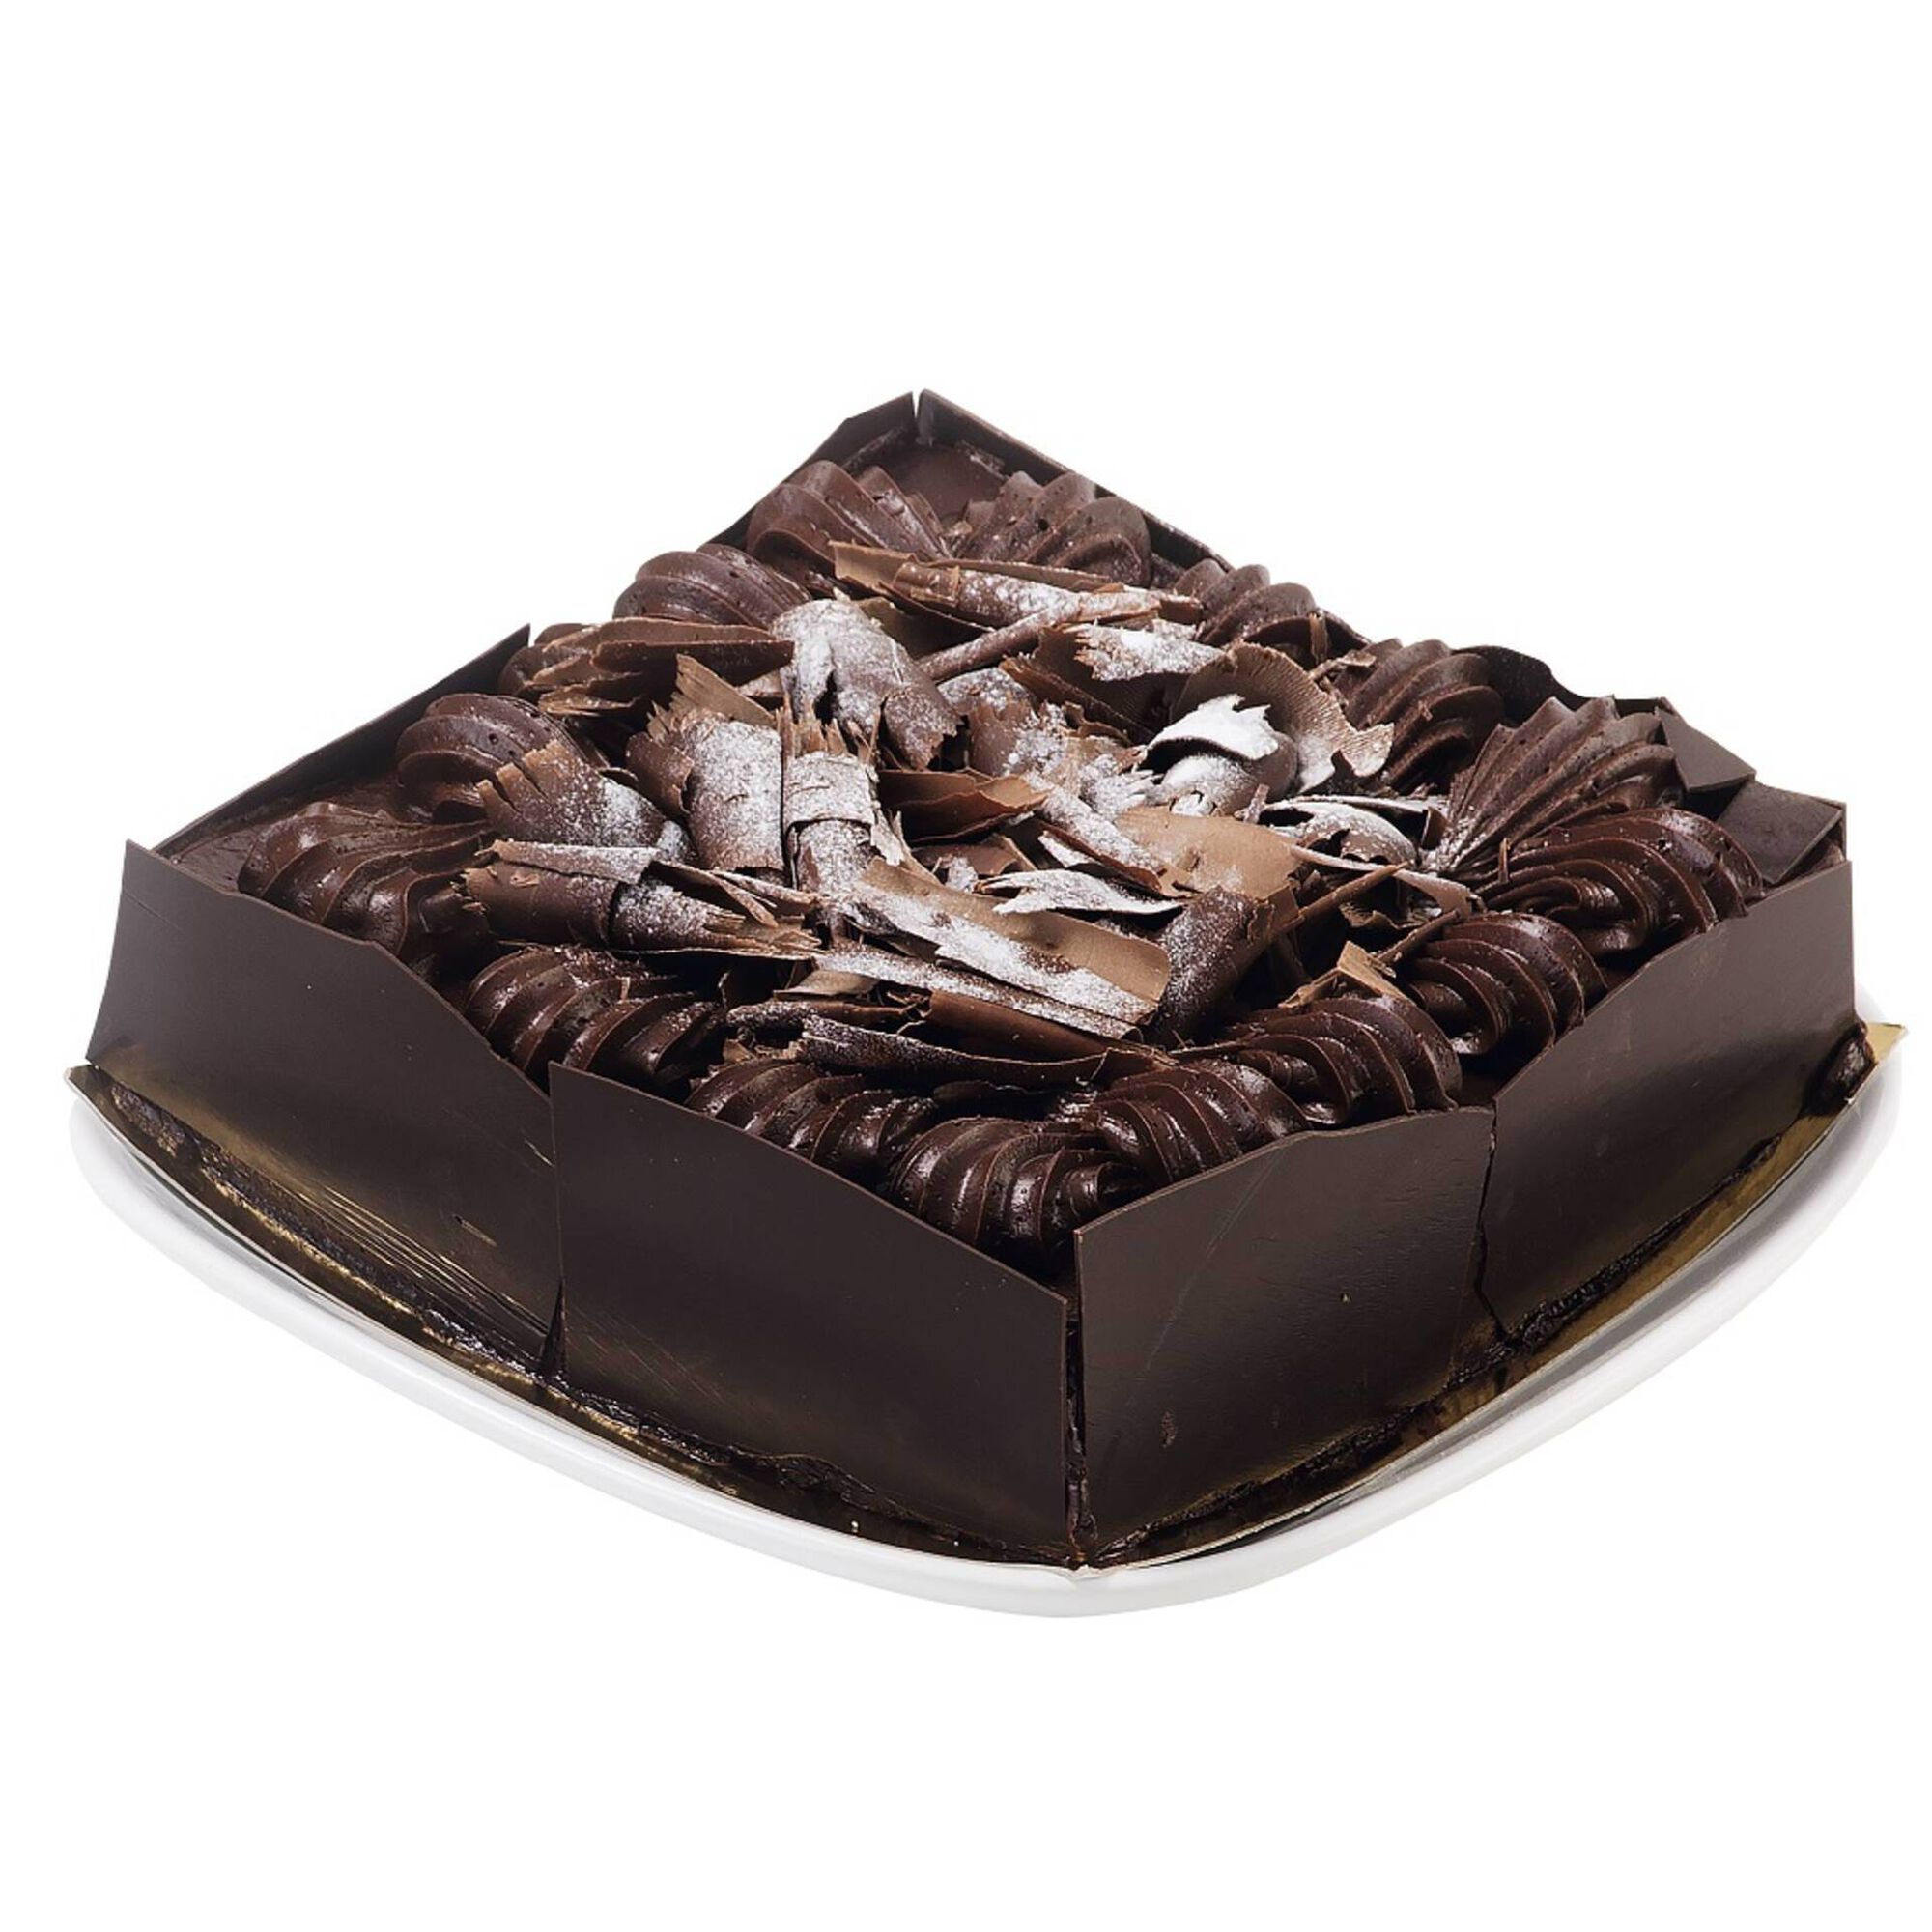 Bolo Chantilly Decoracão Especial Chocolate Kg